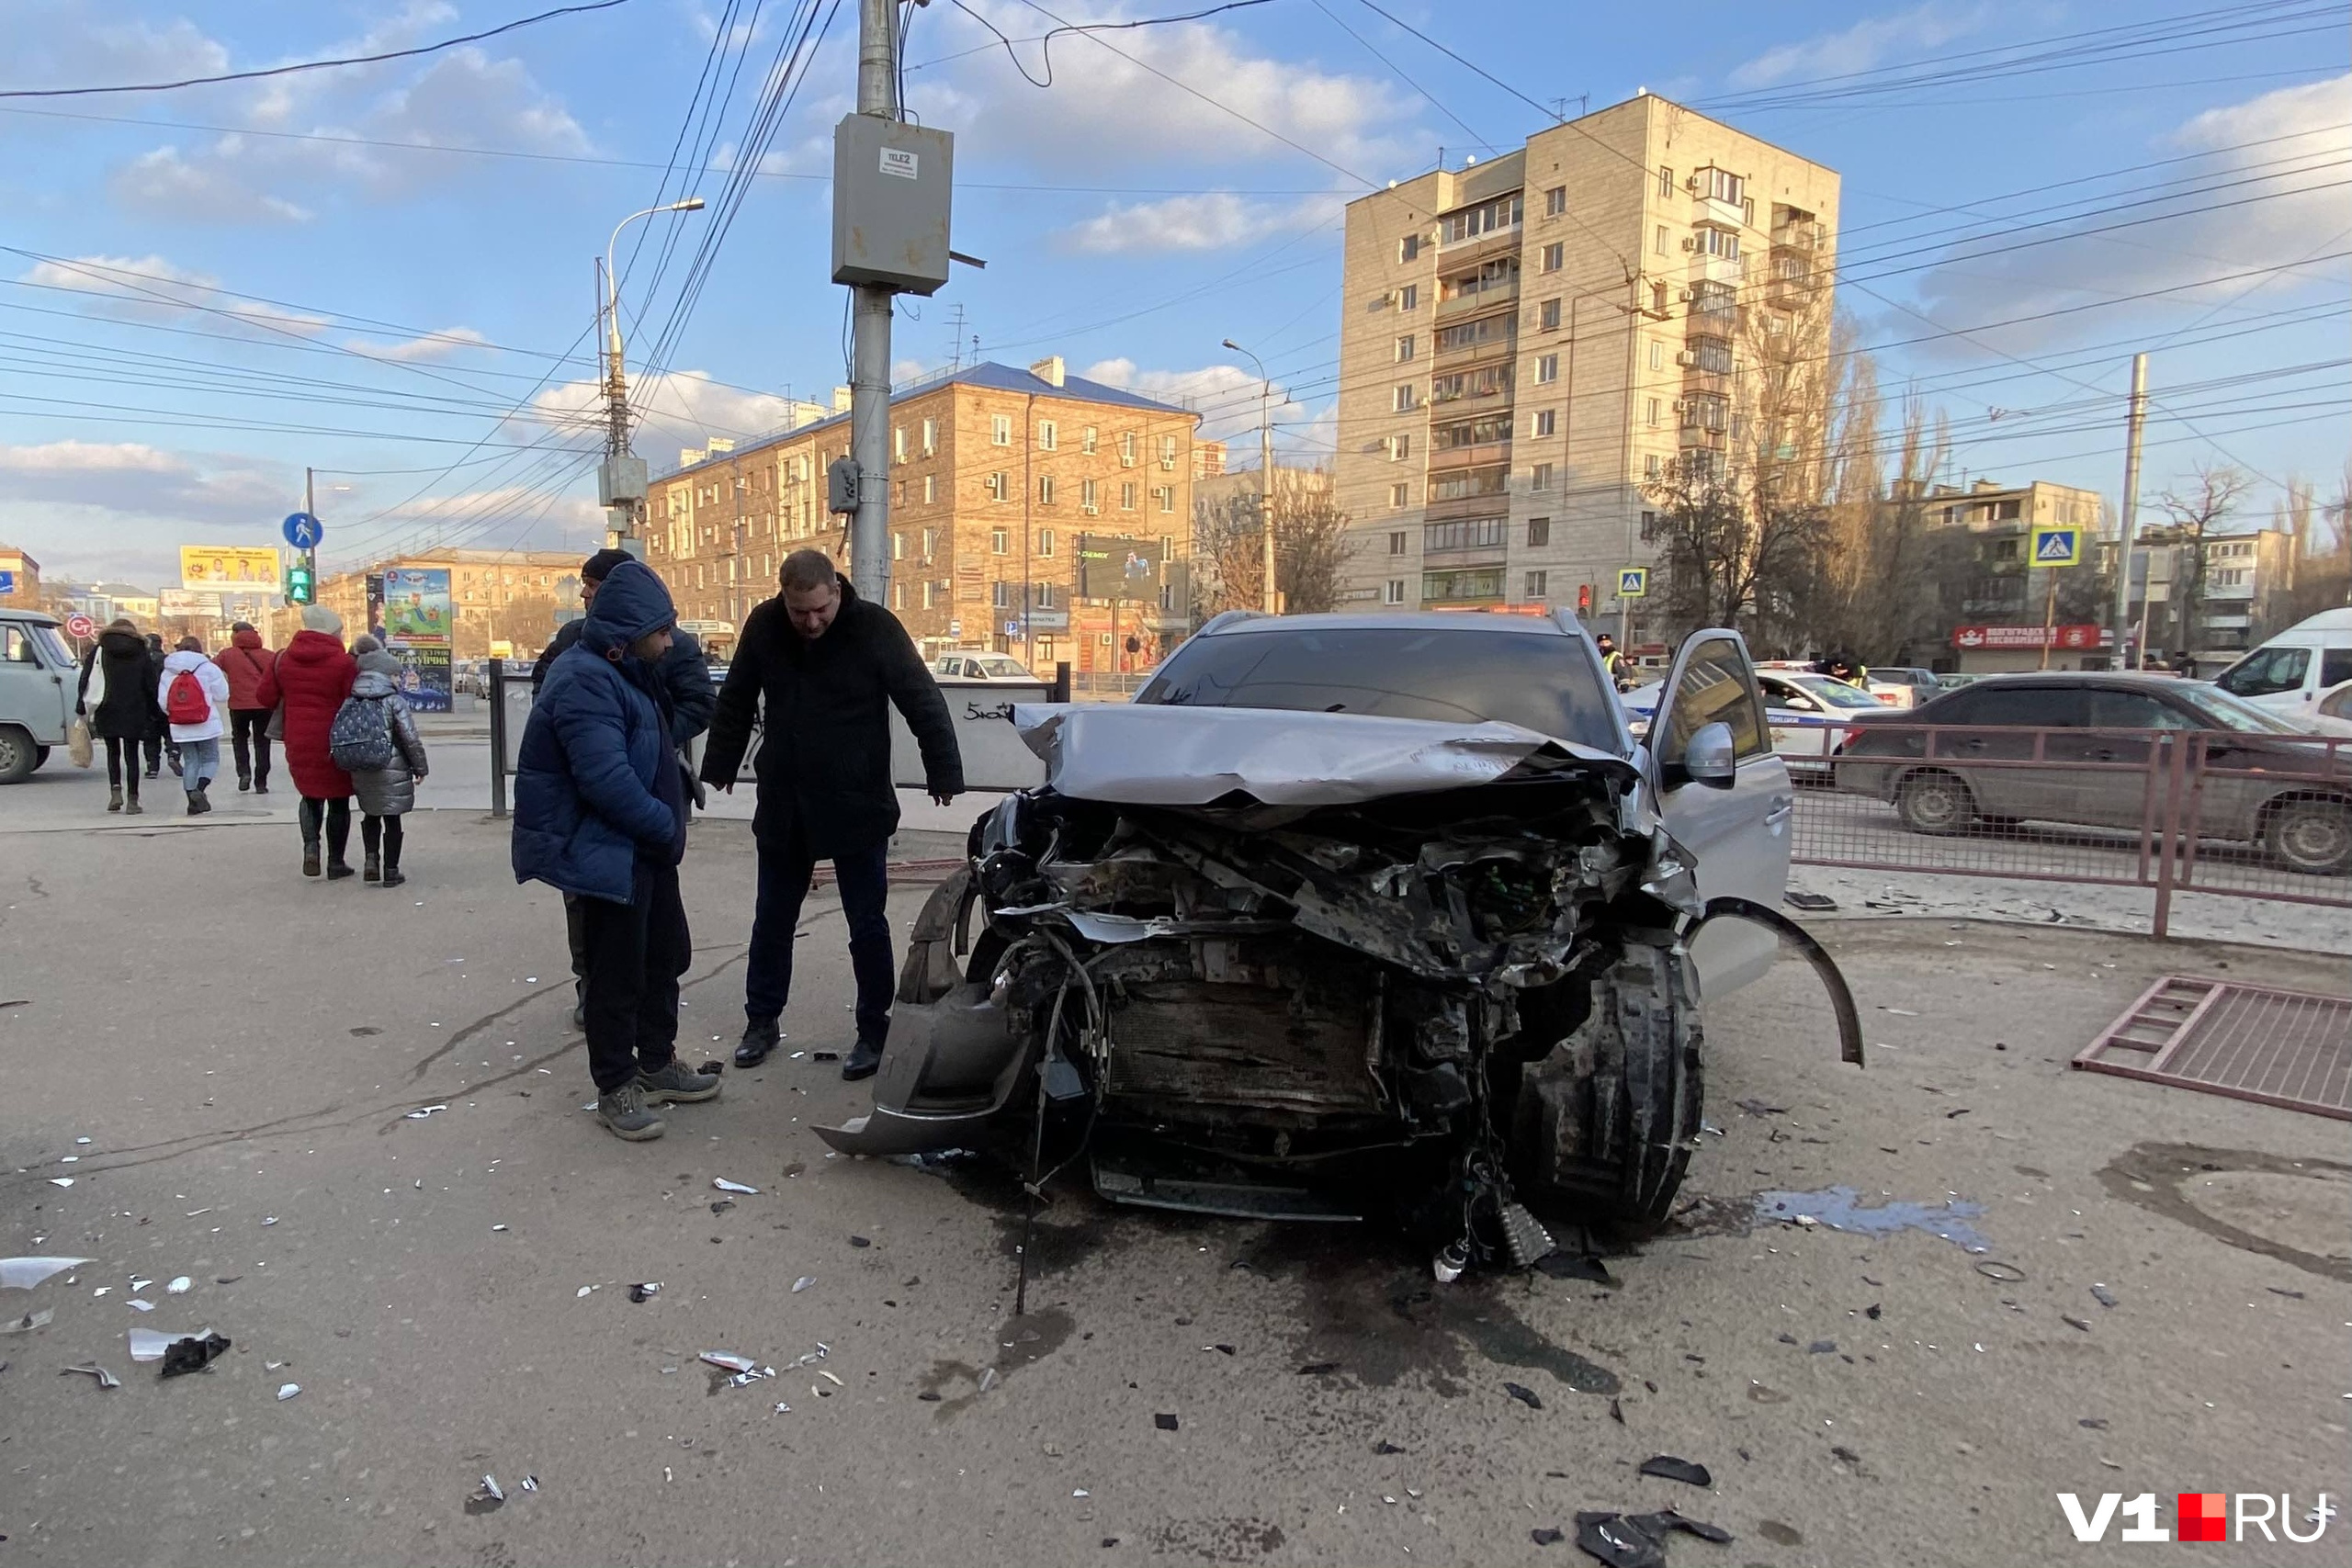 Срочные новости происшествия. Серьёзная авария в Дагестане.